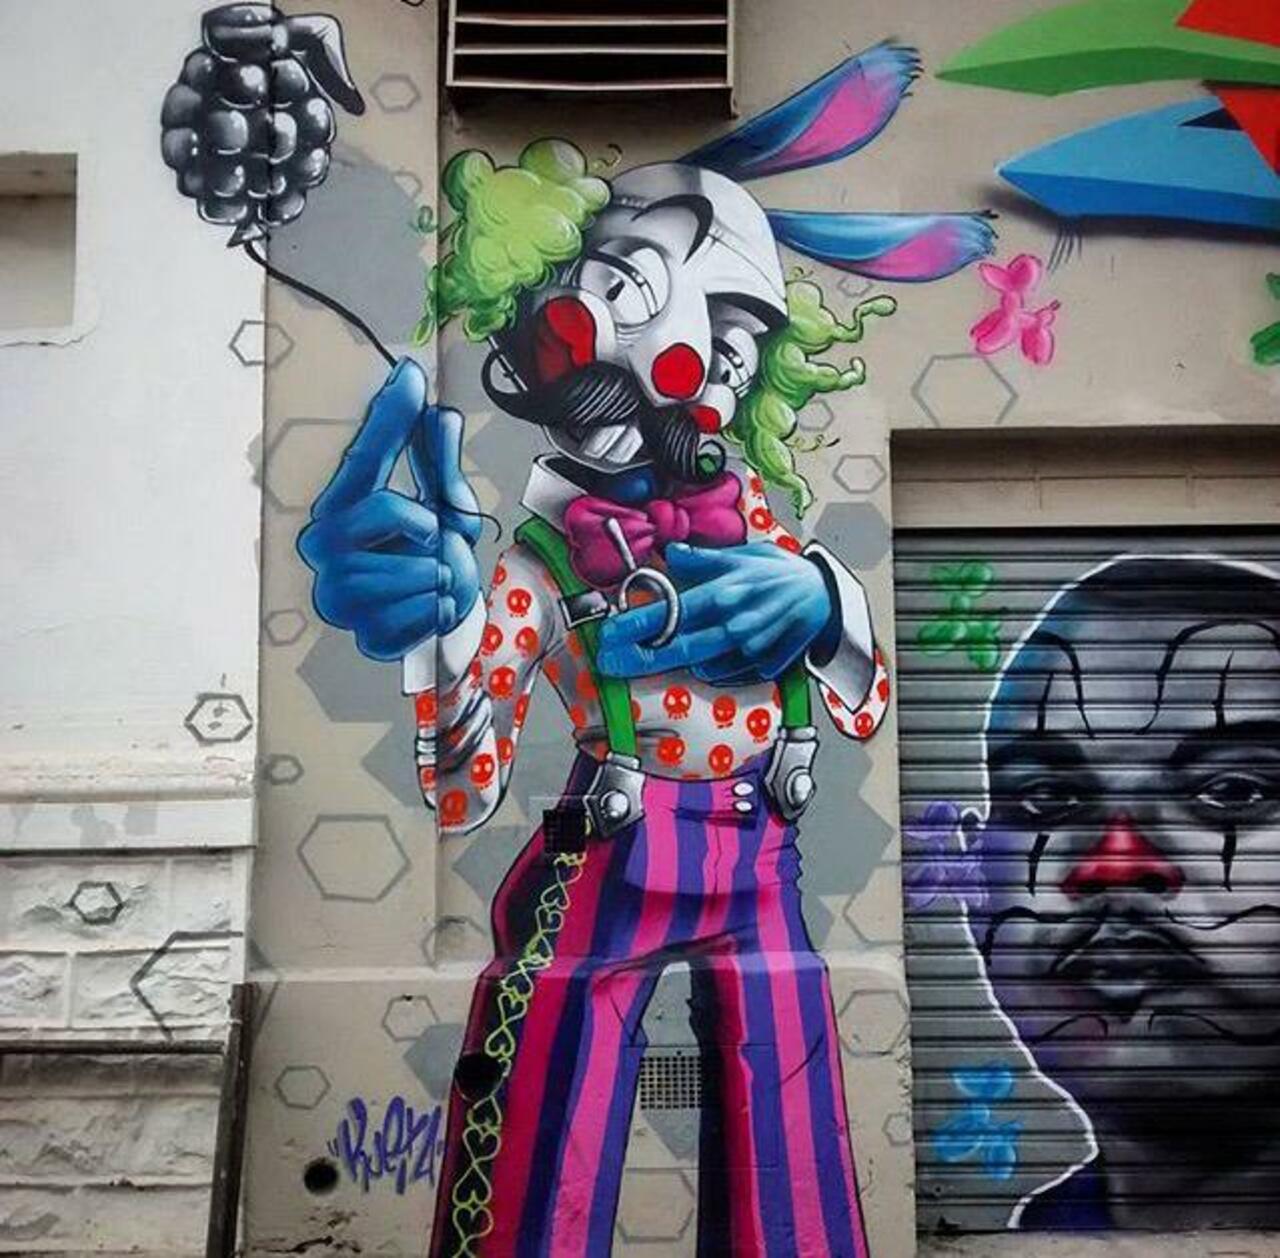 RT belilac "RT belilac "RT belilac "New Street Art by Karen Kueia 

#art #graffiti #mural #streetart http://t.co/TLijJt3KhJ"""